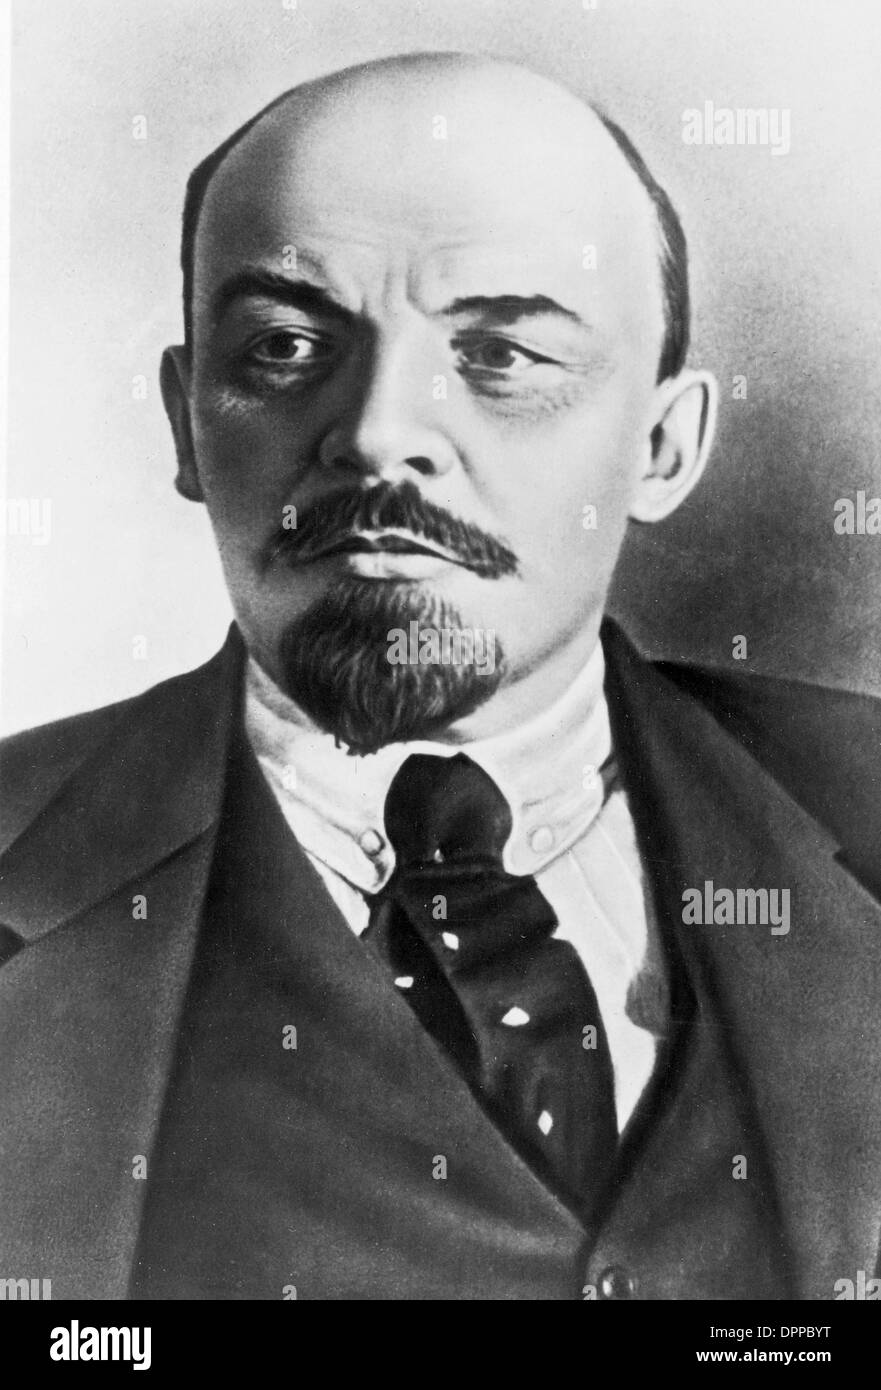 Vladimir Ilyich Lenin, russischer kommunistischer Revolutionär, Politiker und Ministerpräsident der Sowjetunion Stockfoto